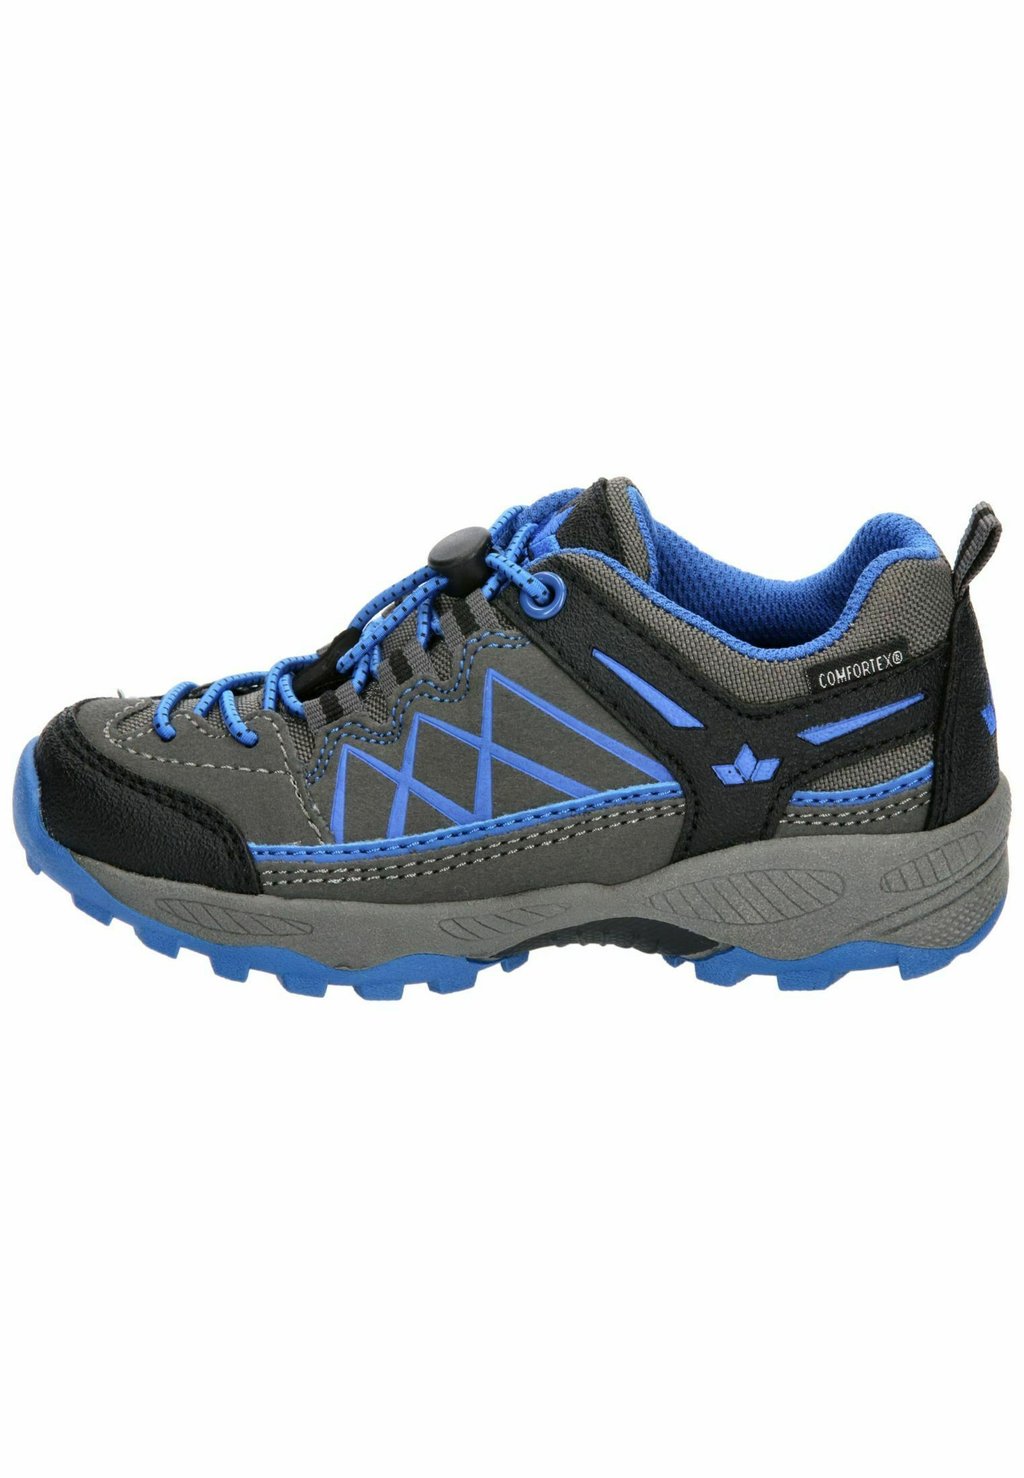 Нейтральные кроссовки LICO, цвет grau schwarz blau ботильоны на шнуровке elian lico цвет grau schwarz